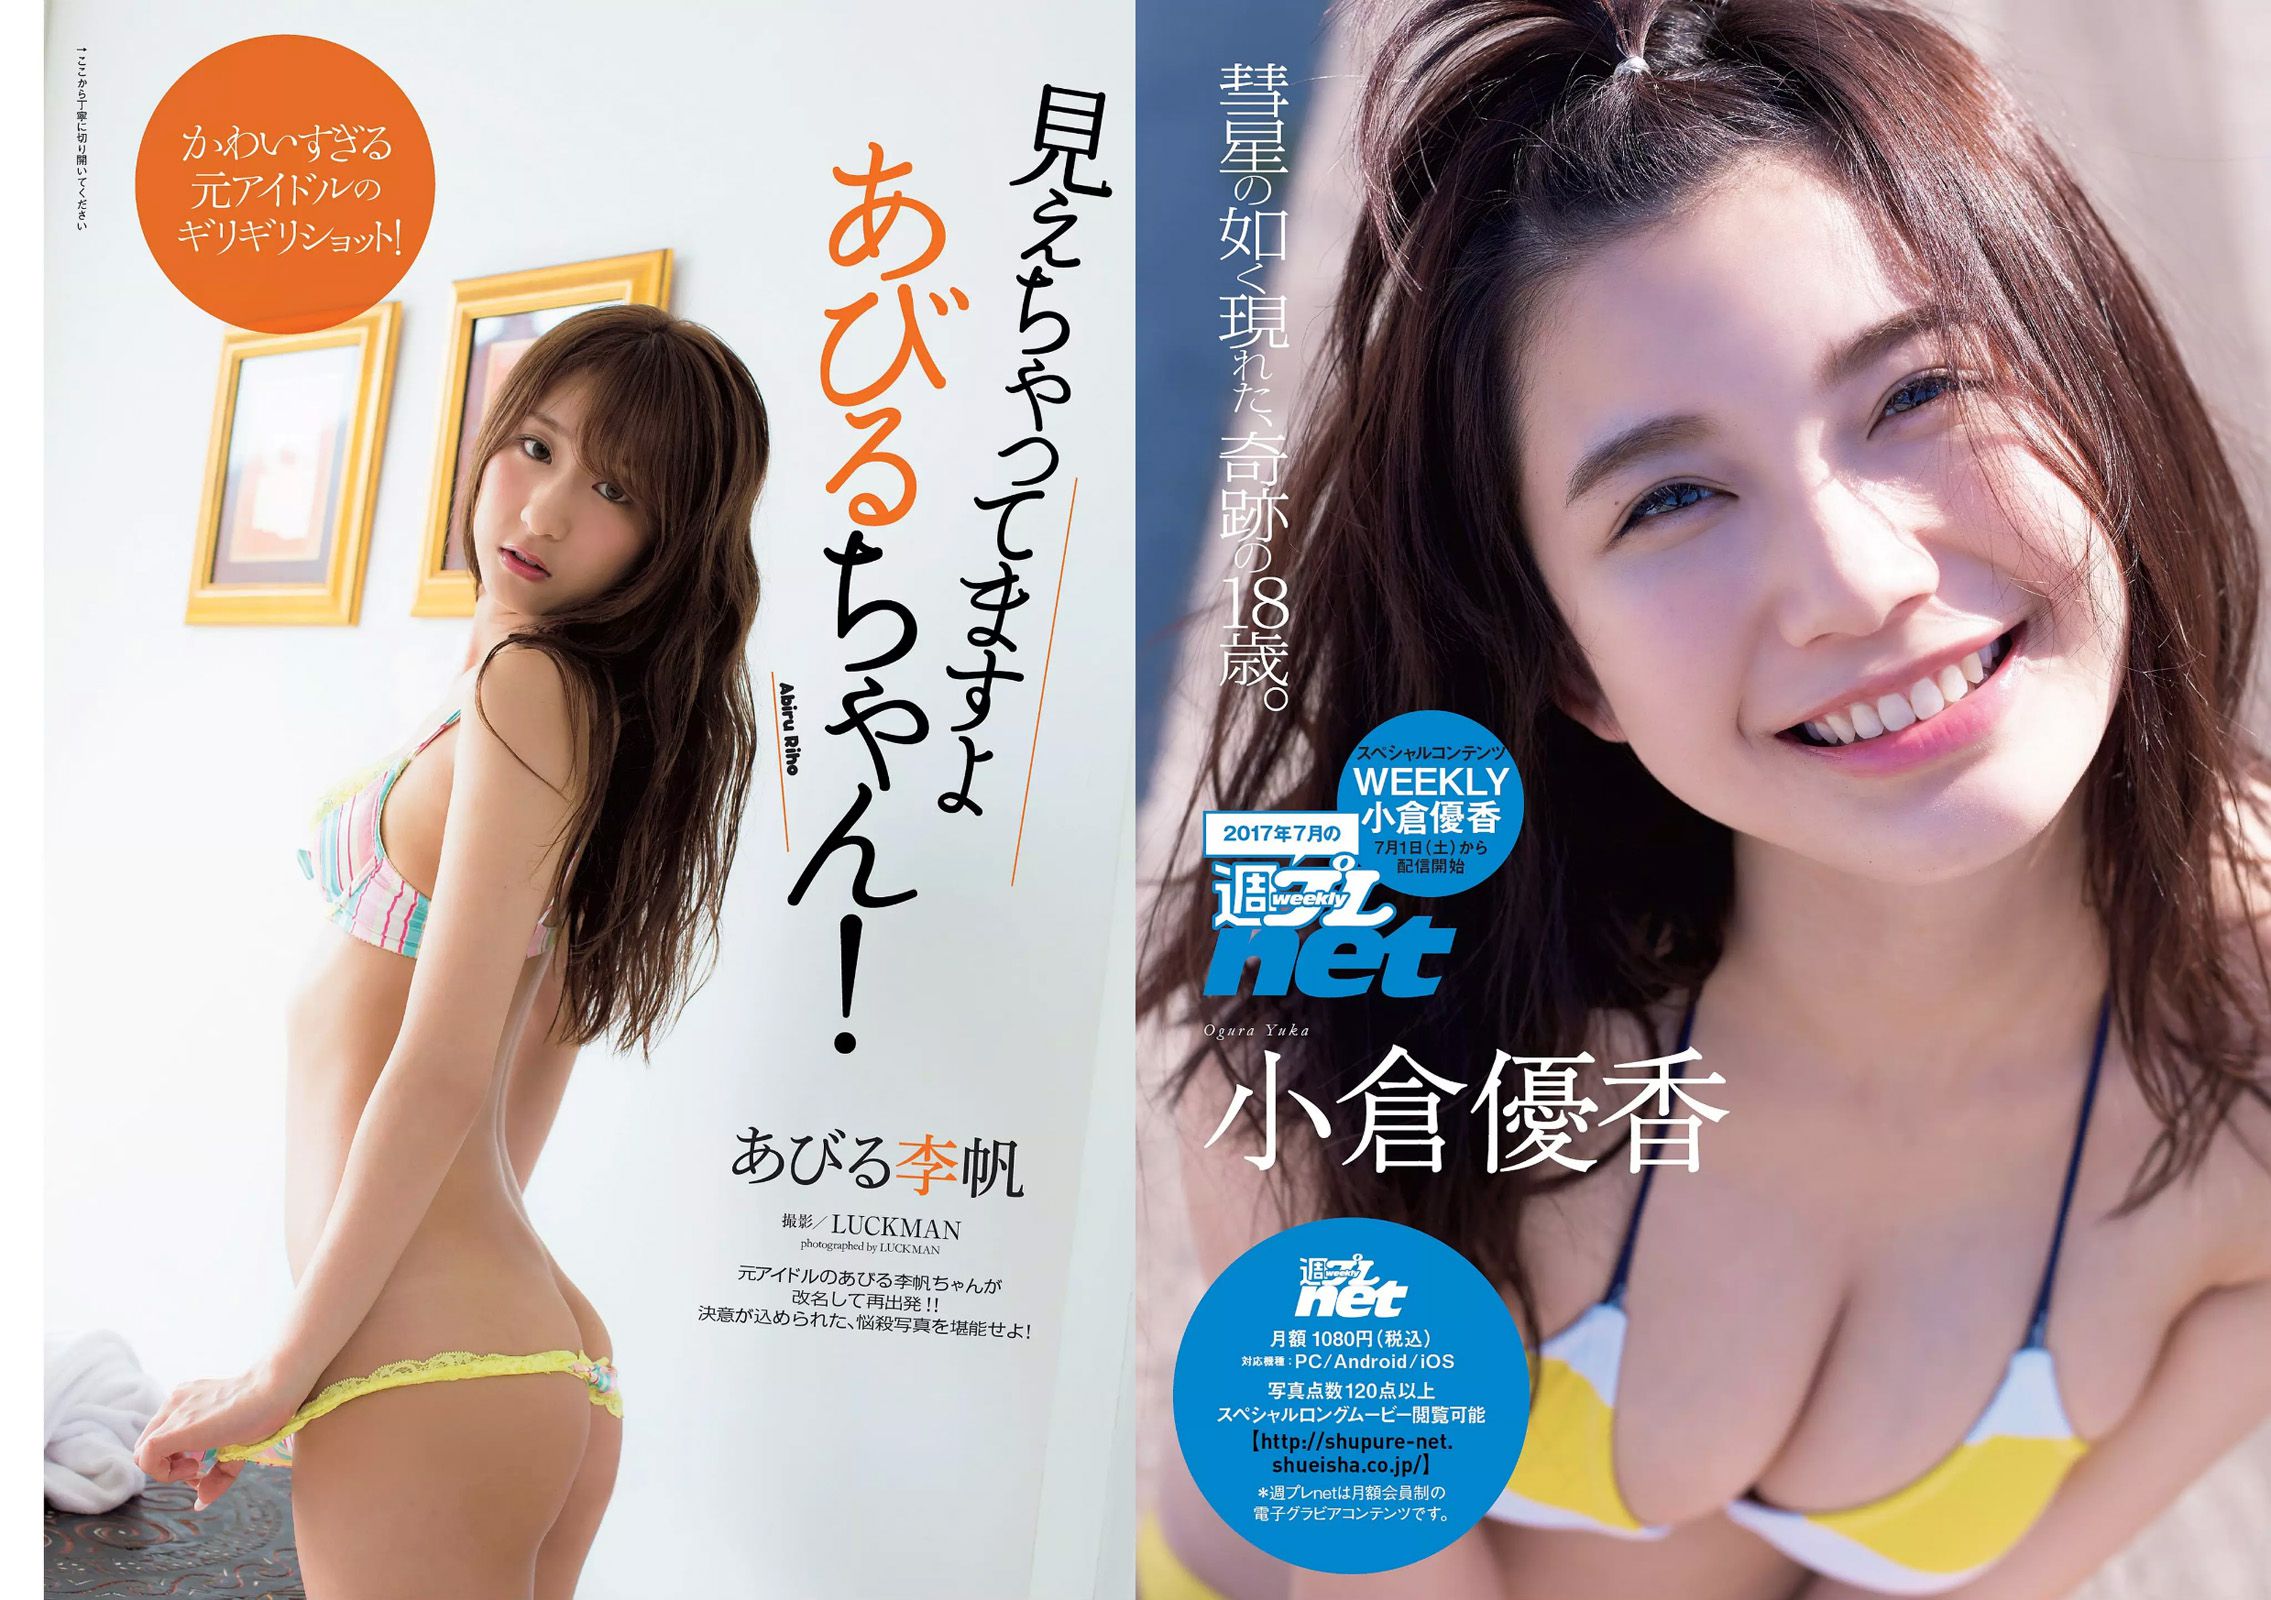 Angela Mei Riho Abiru Yuuna Suzuki Yuno Ohara Moemi Katayama Ito Ohno [Weekly Playboy] 2017 No.28 Fotografia Pagina 3 No.0ac31e